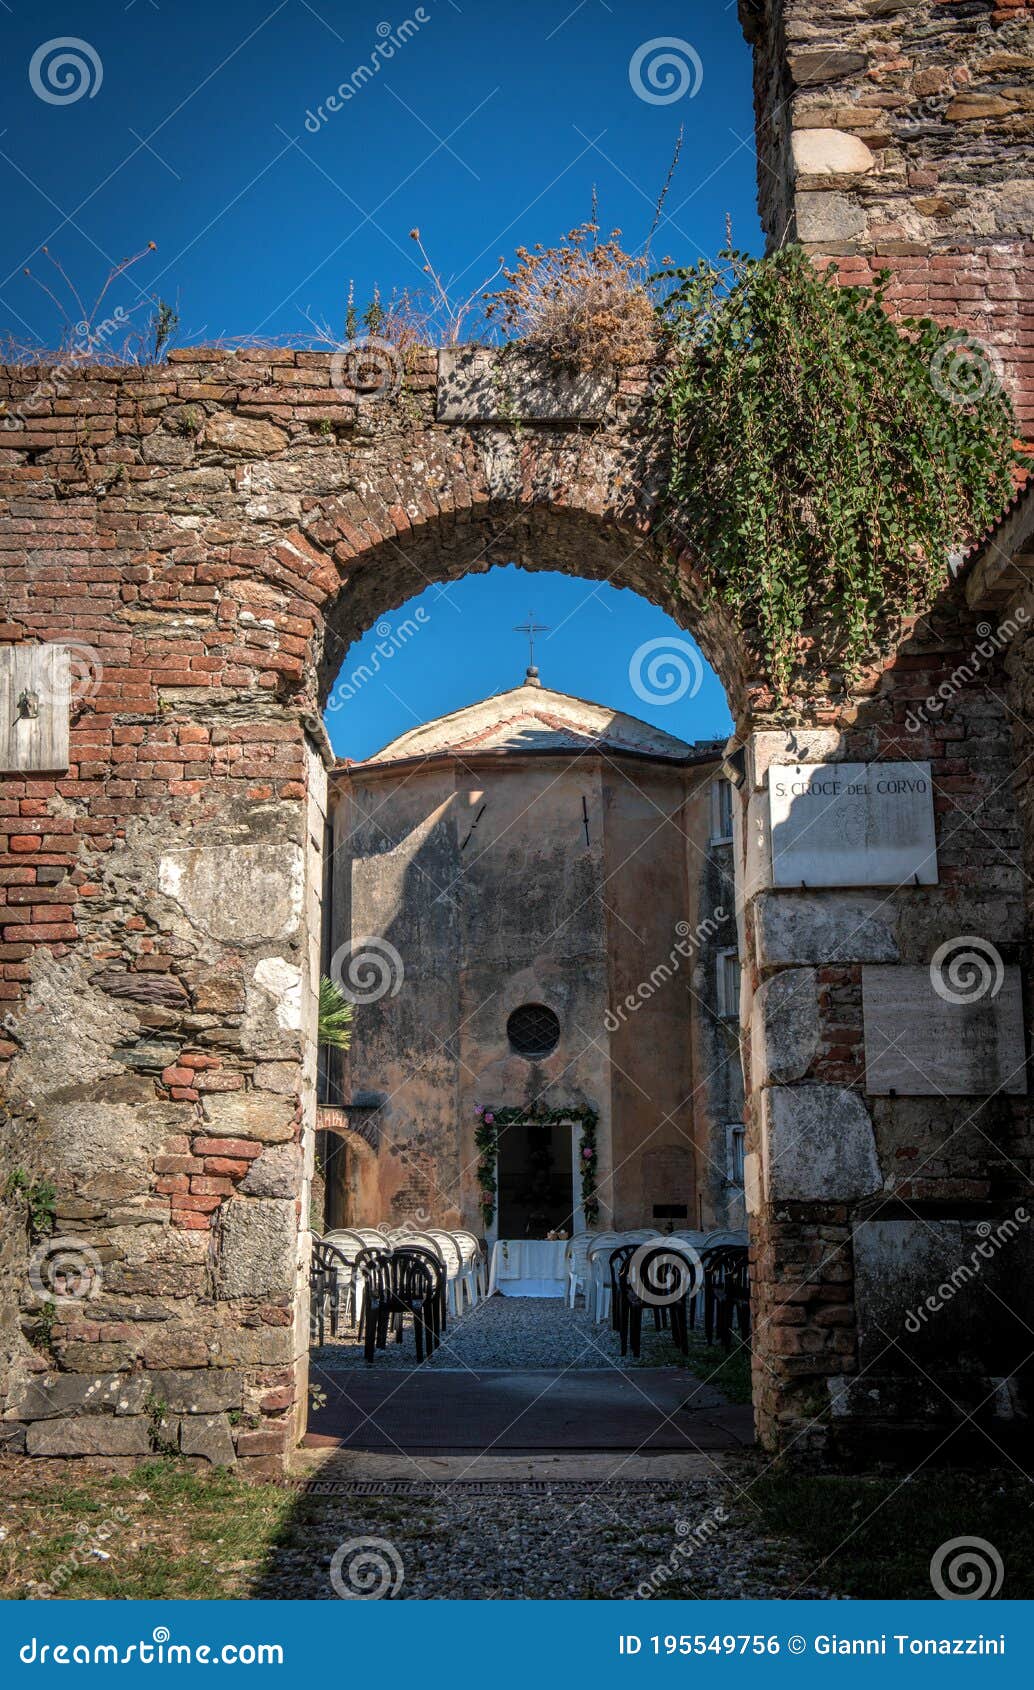 monastery of santa croce del corvo, la spezia, italy